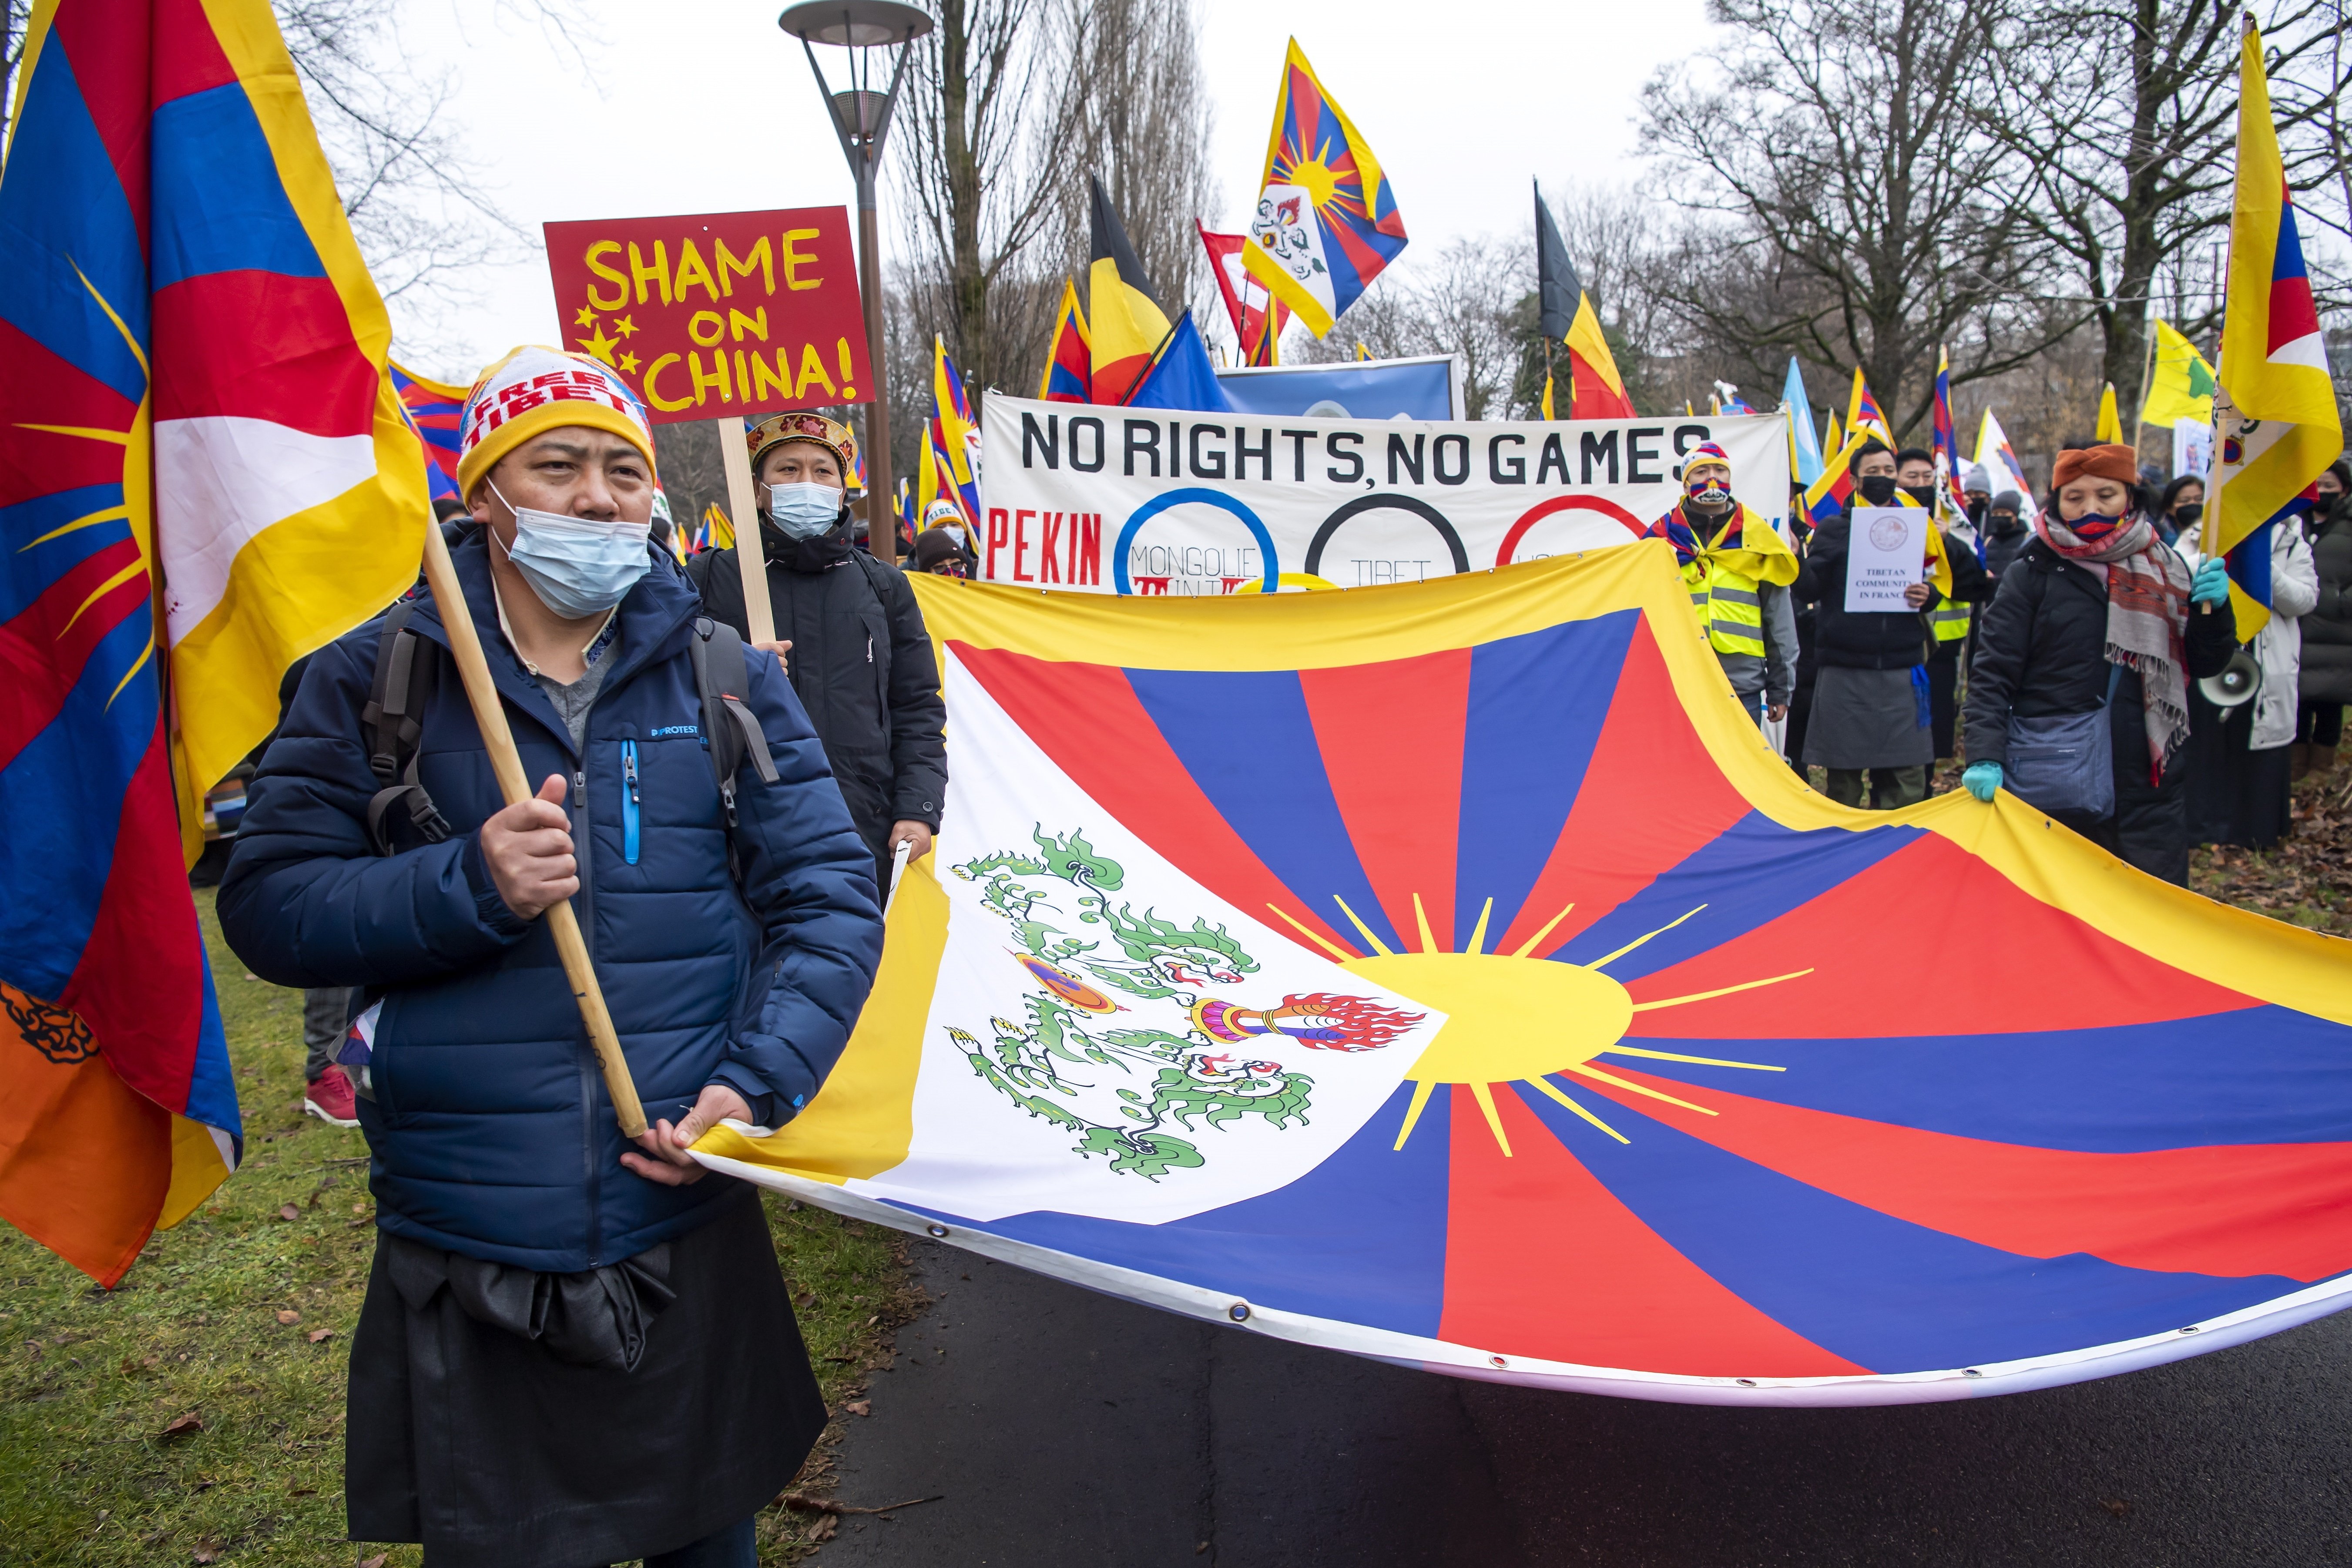 Tibetans i uigurs es manifesten arreu del món contra la repressió xinesa